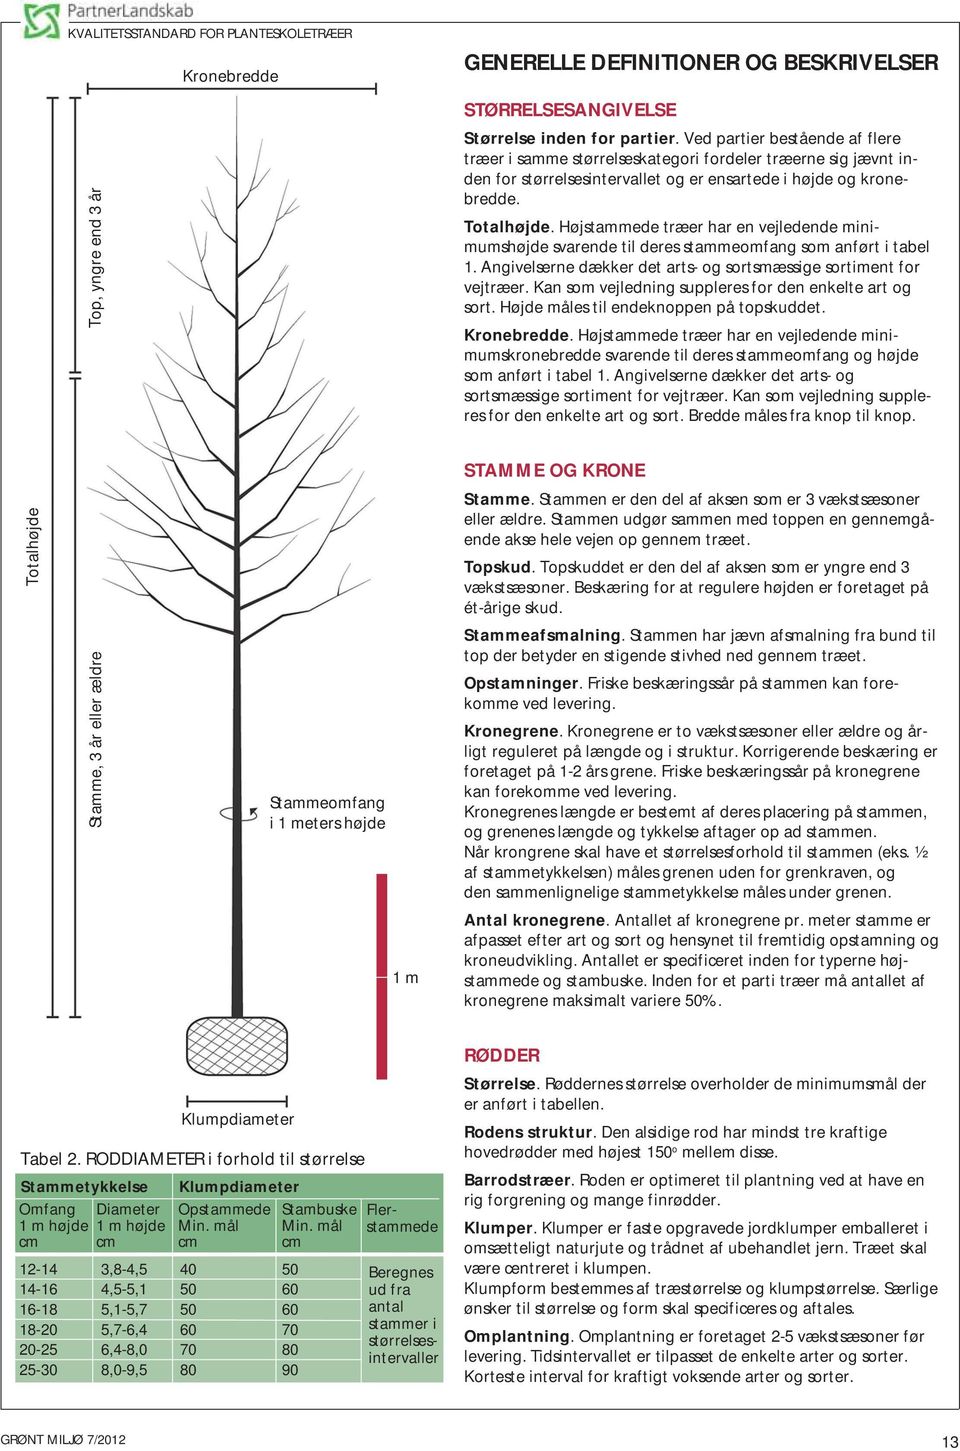 Højstammede træer har en vejledende minimumshøjde svarende til deres stammeomfang som anført i tabel 1. Angivelserne dækker det arts- og sortsmæssige sortiment for vejtræer.